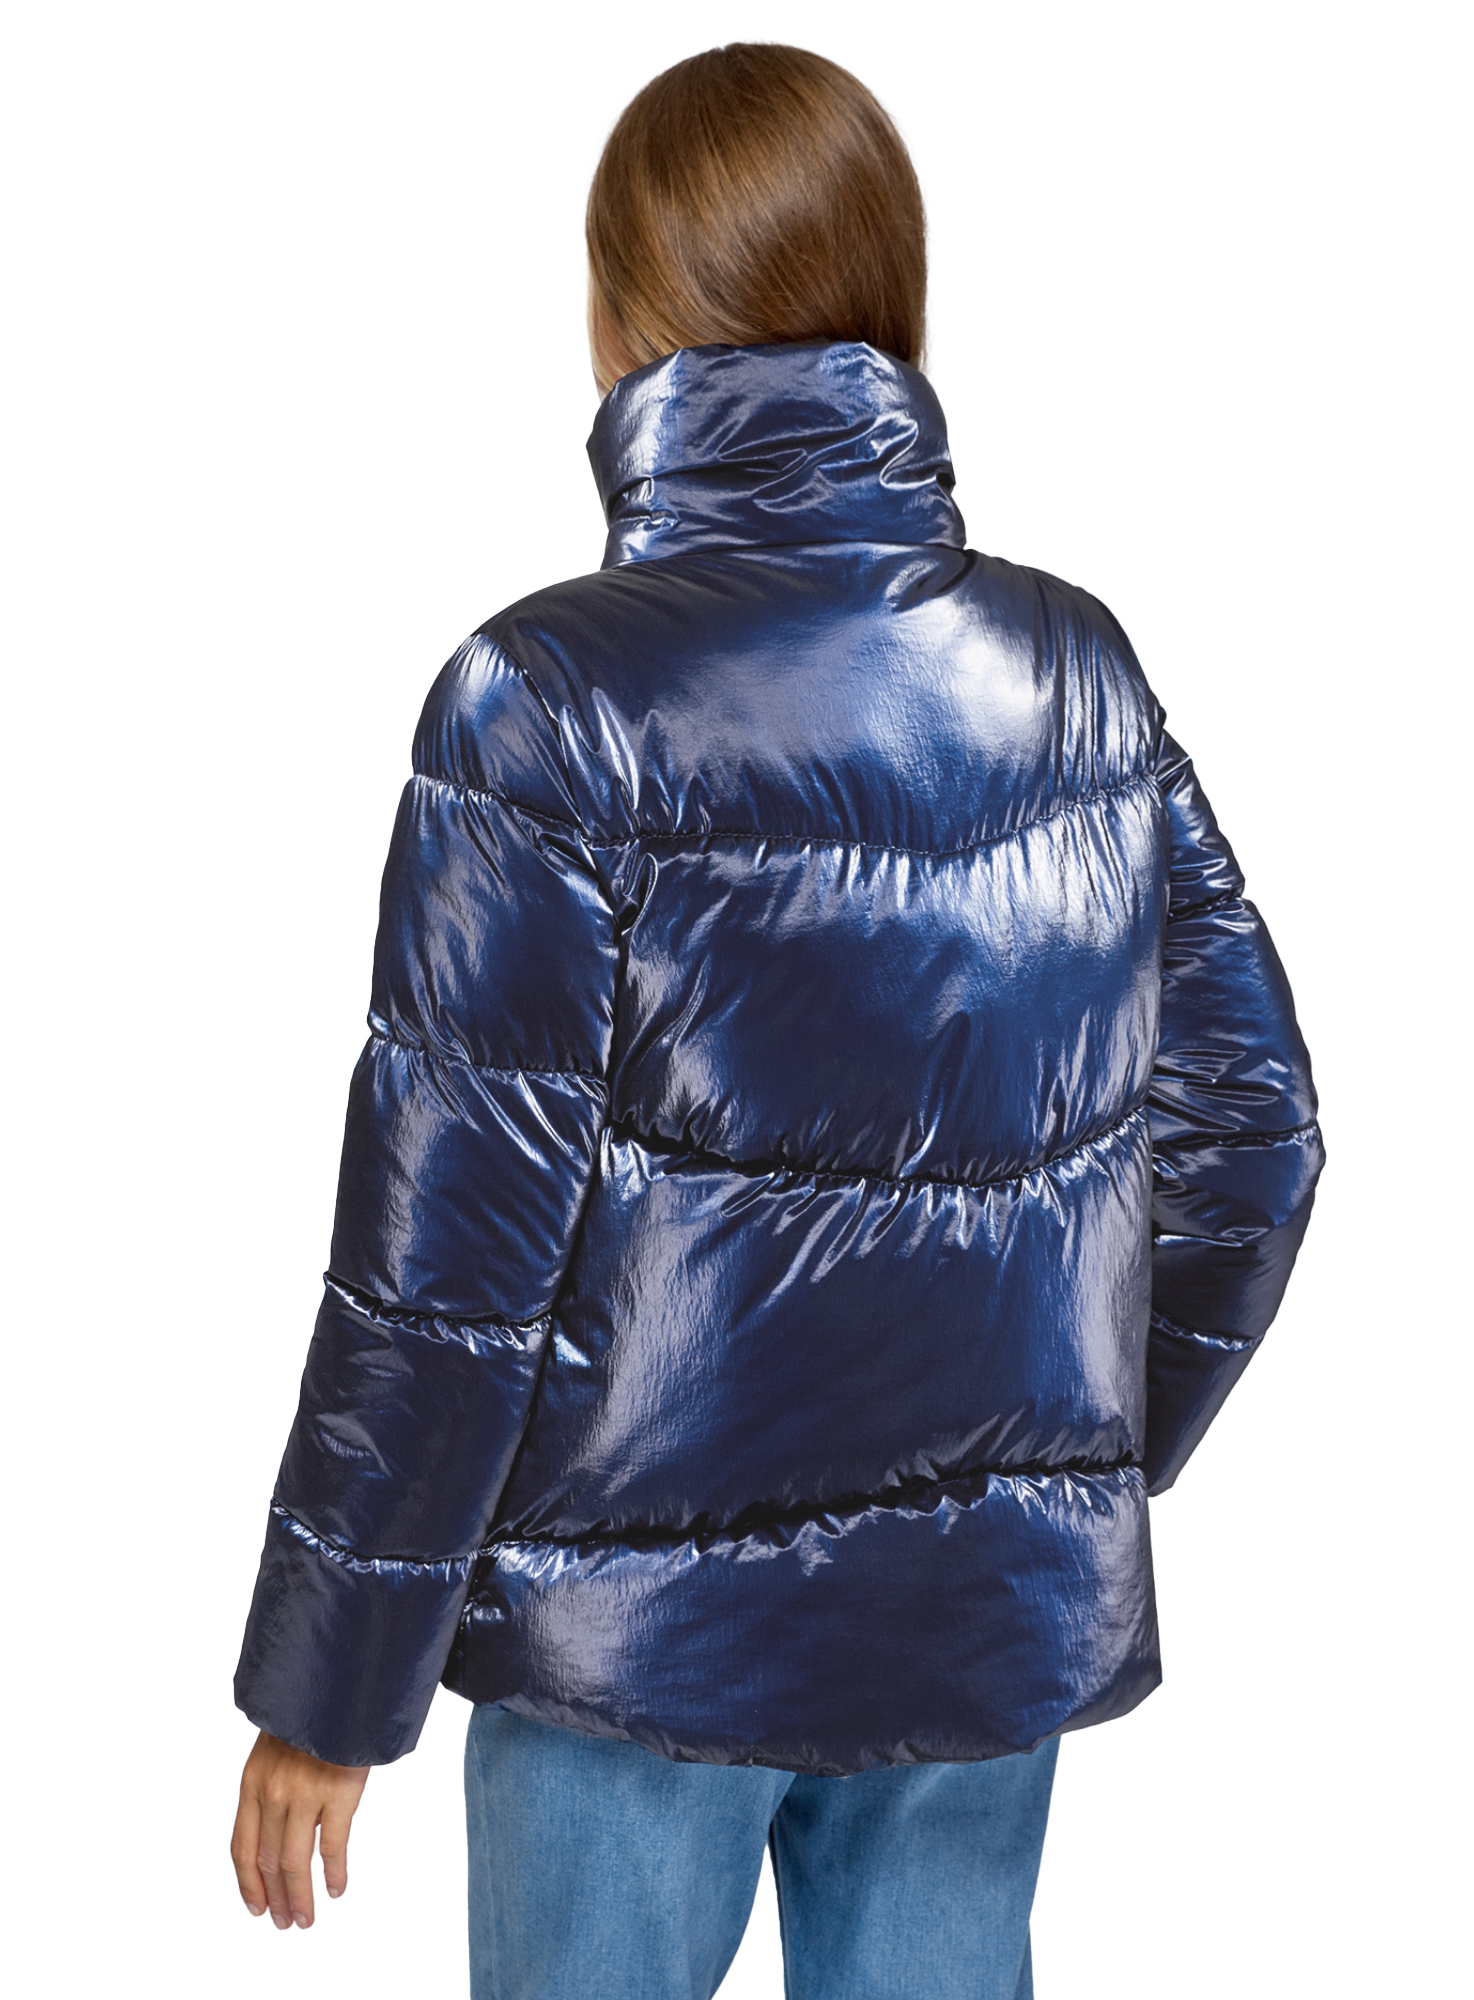 Куртка женская oodji 10203098-4 синяя 40/170